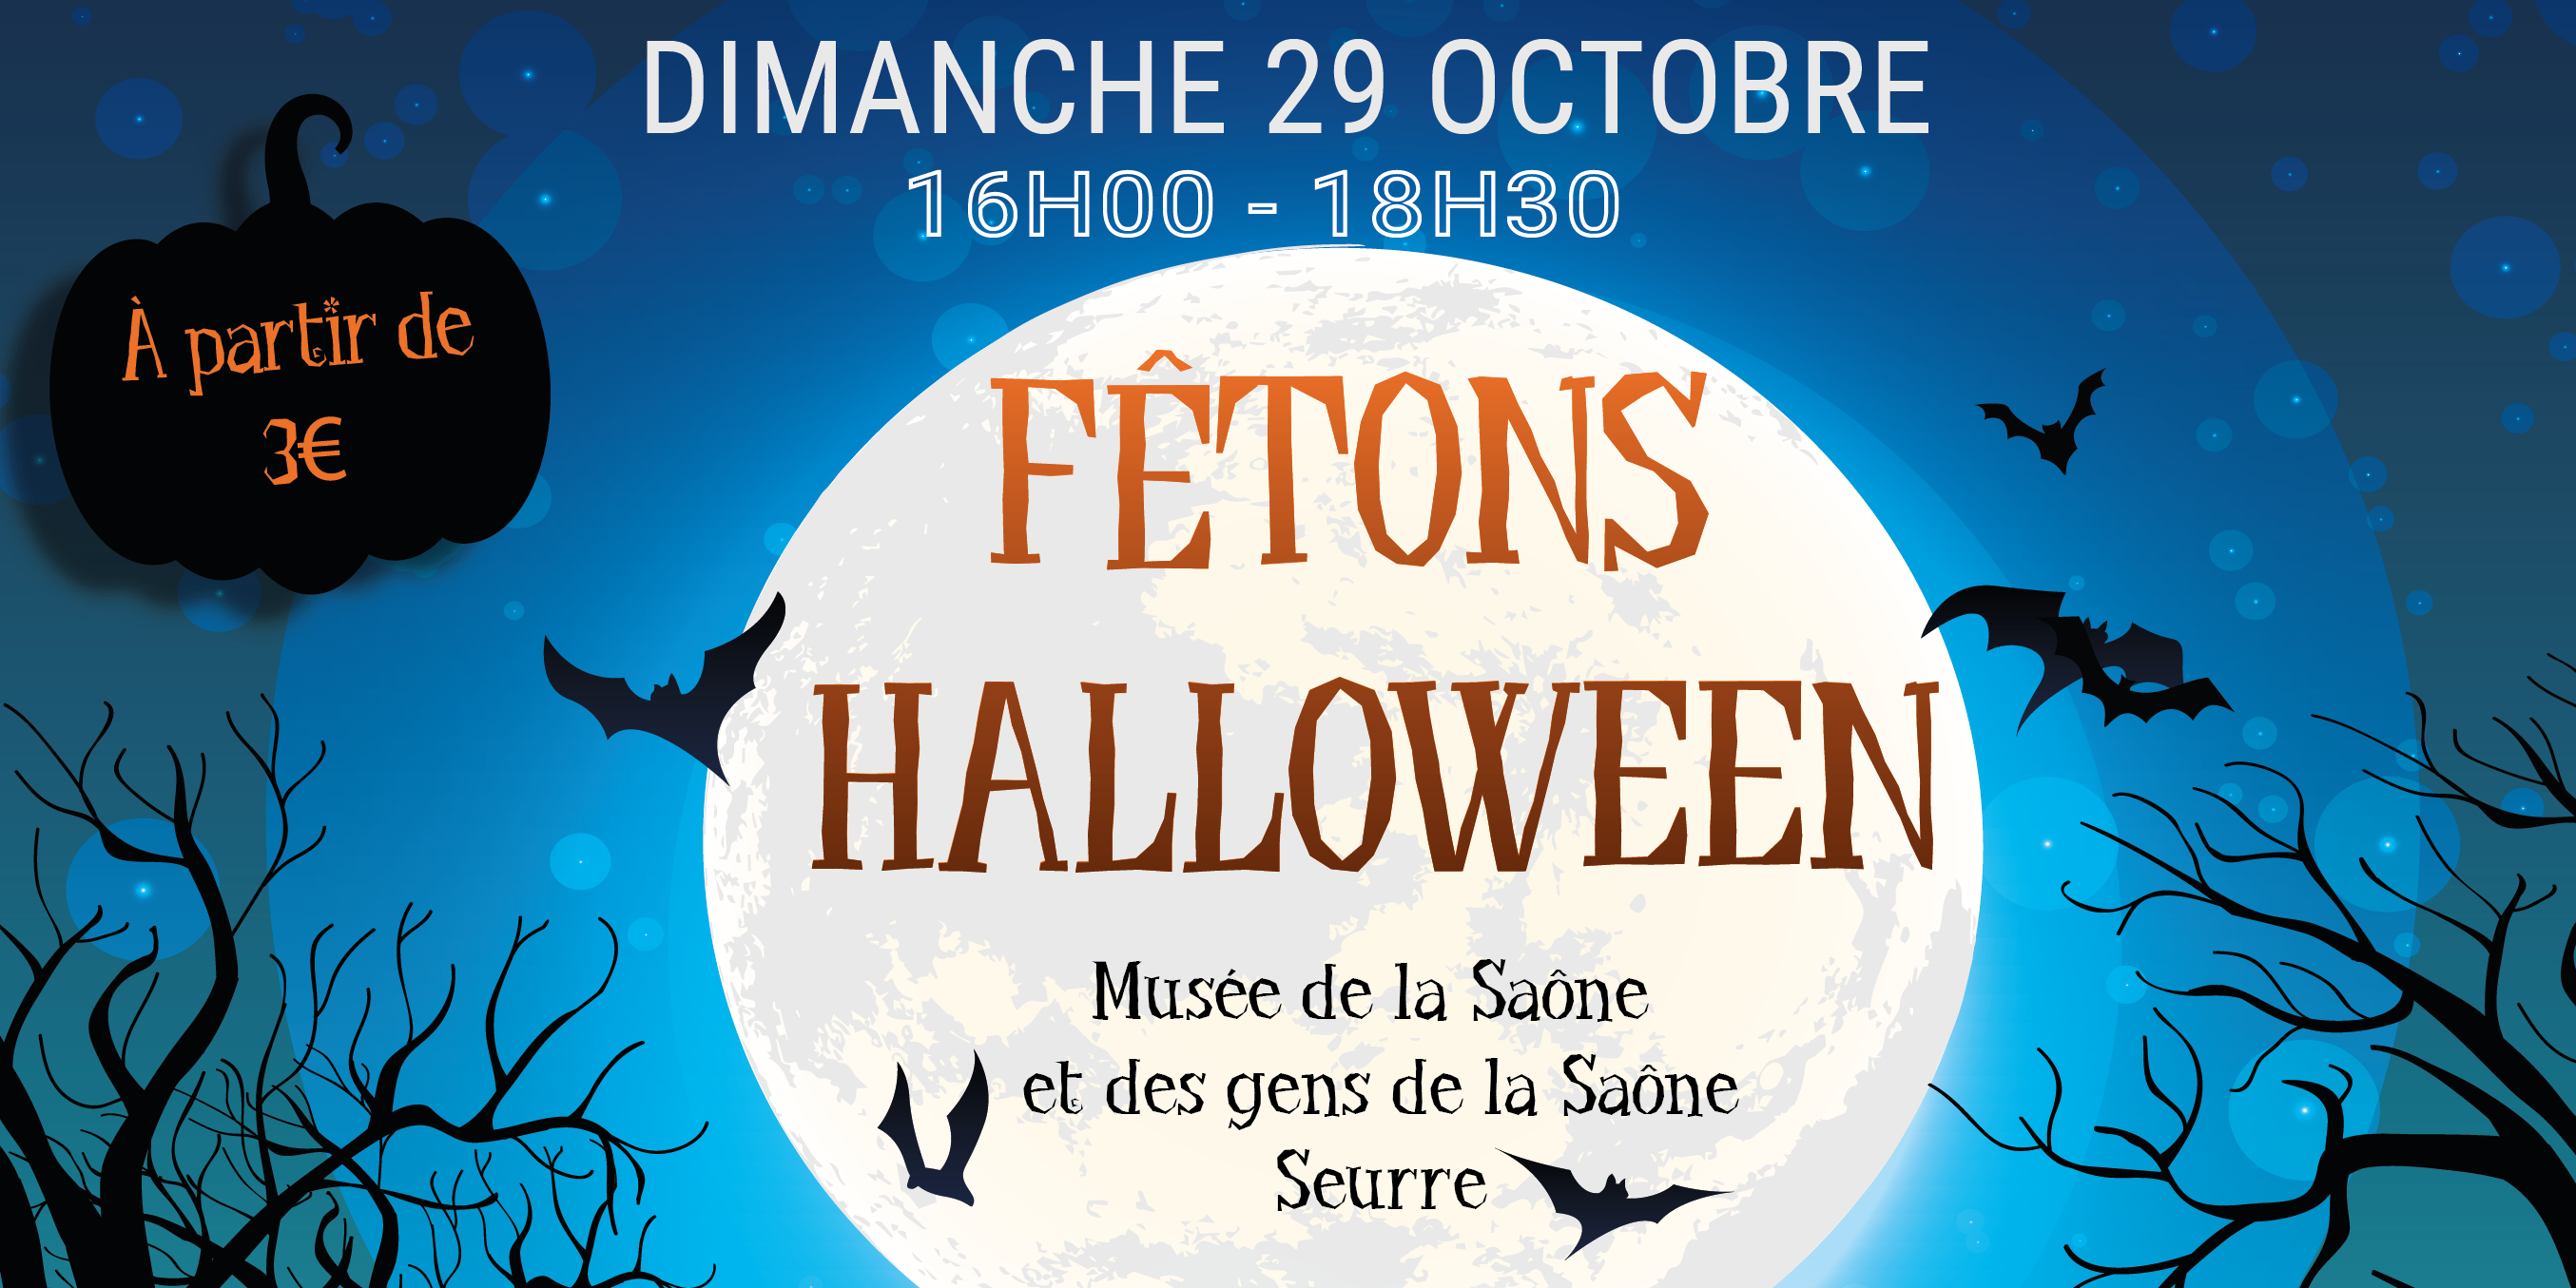 Fêtons Halloween au Musée de la Saône et des gens de la Saône